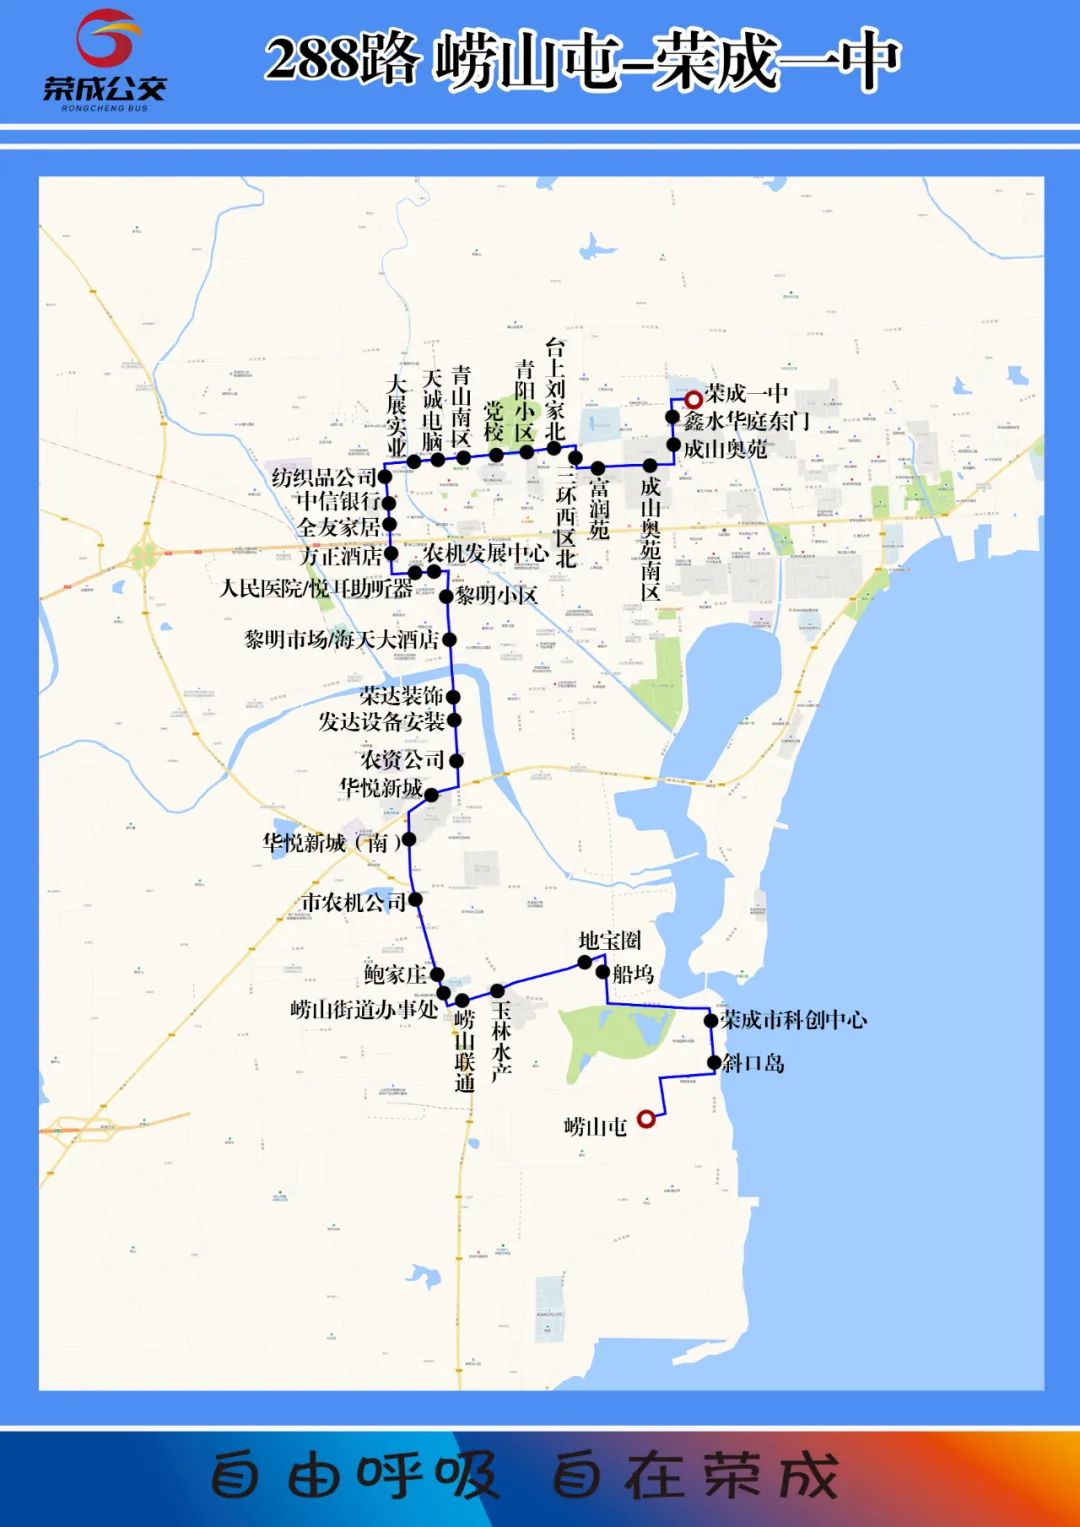 383路公交线路图图片